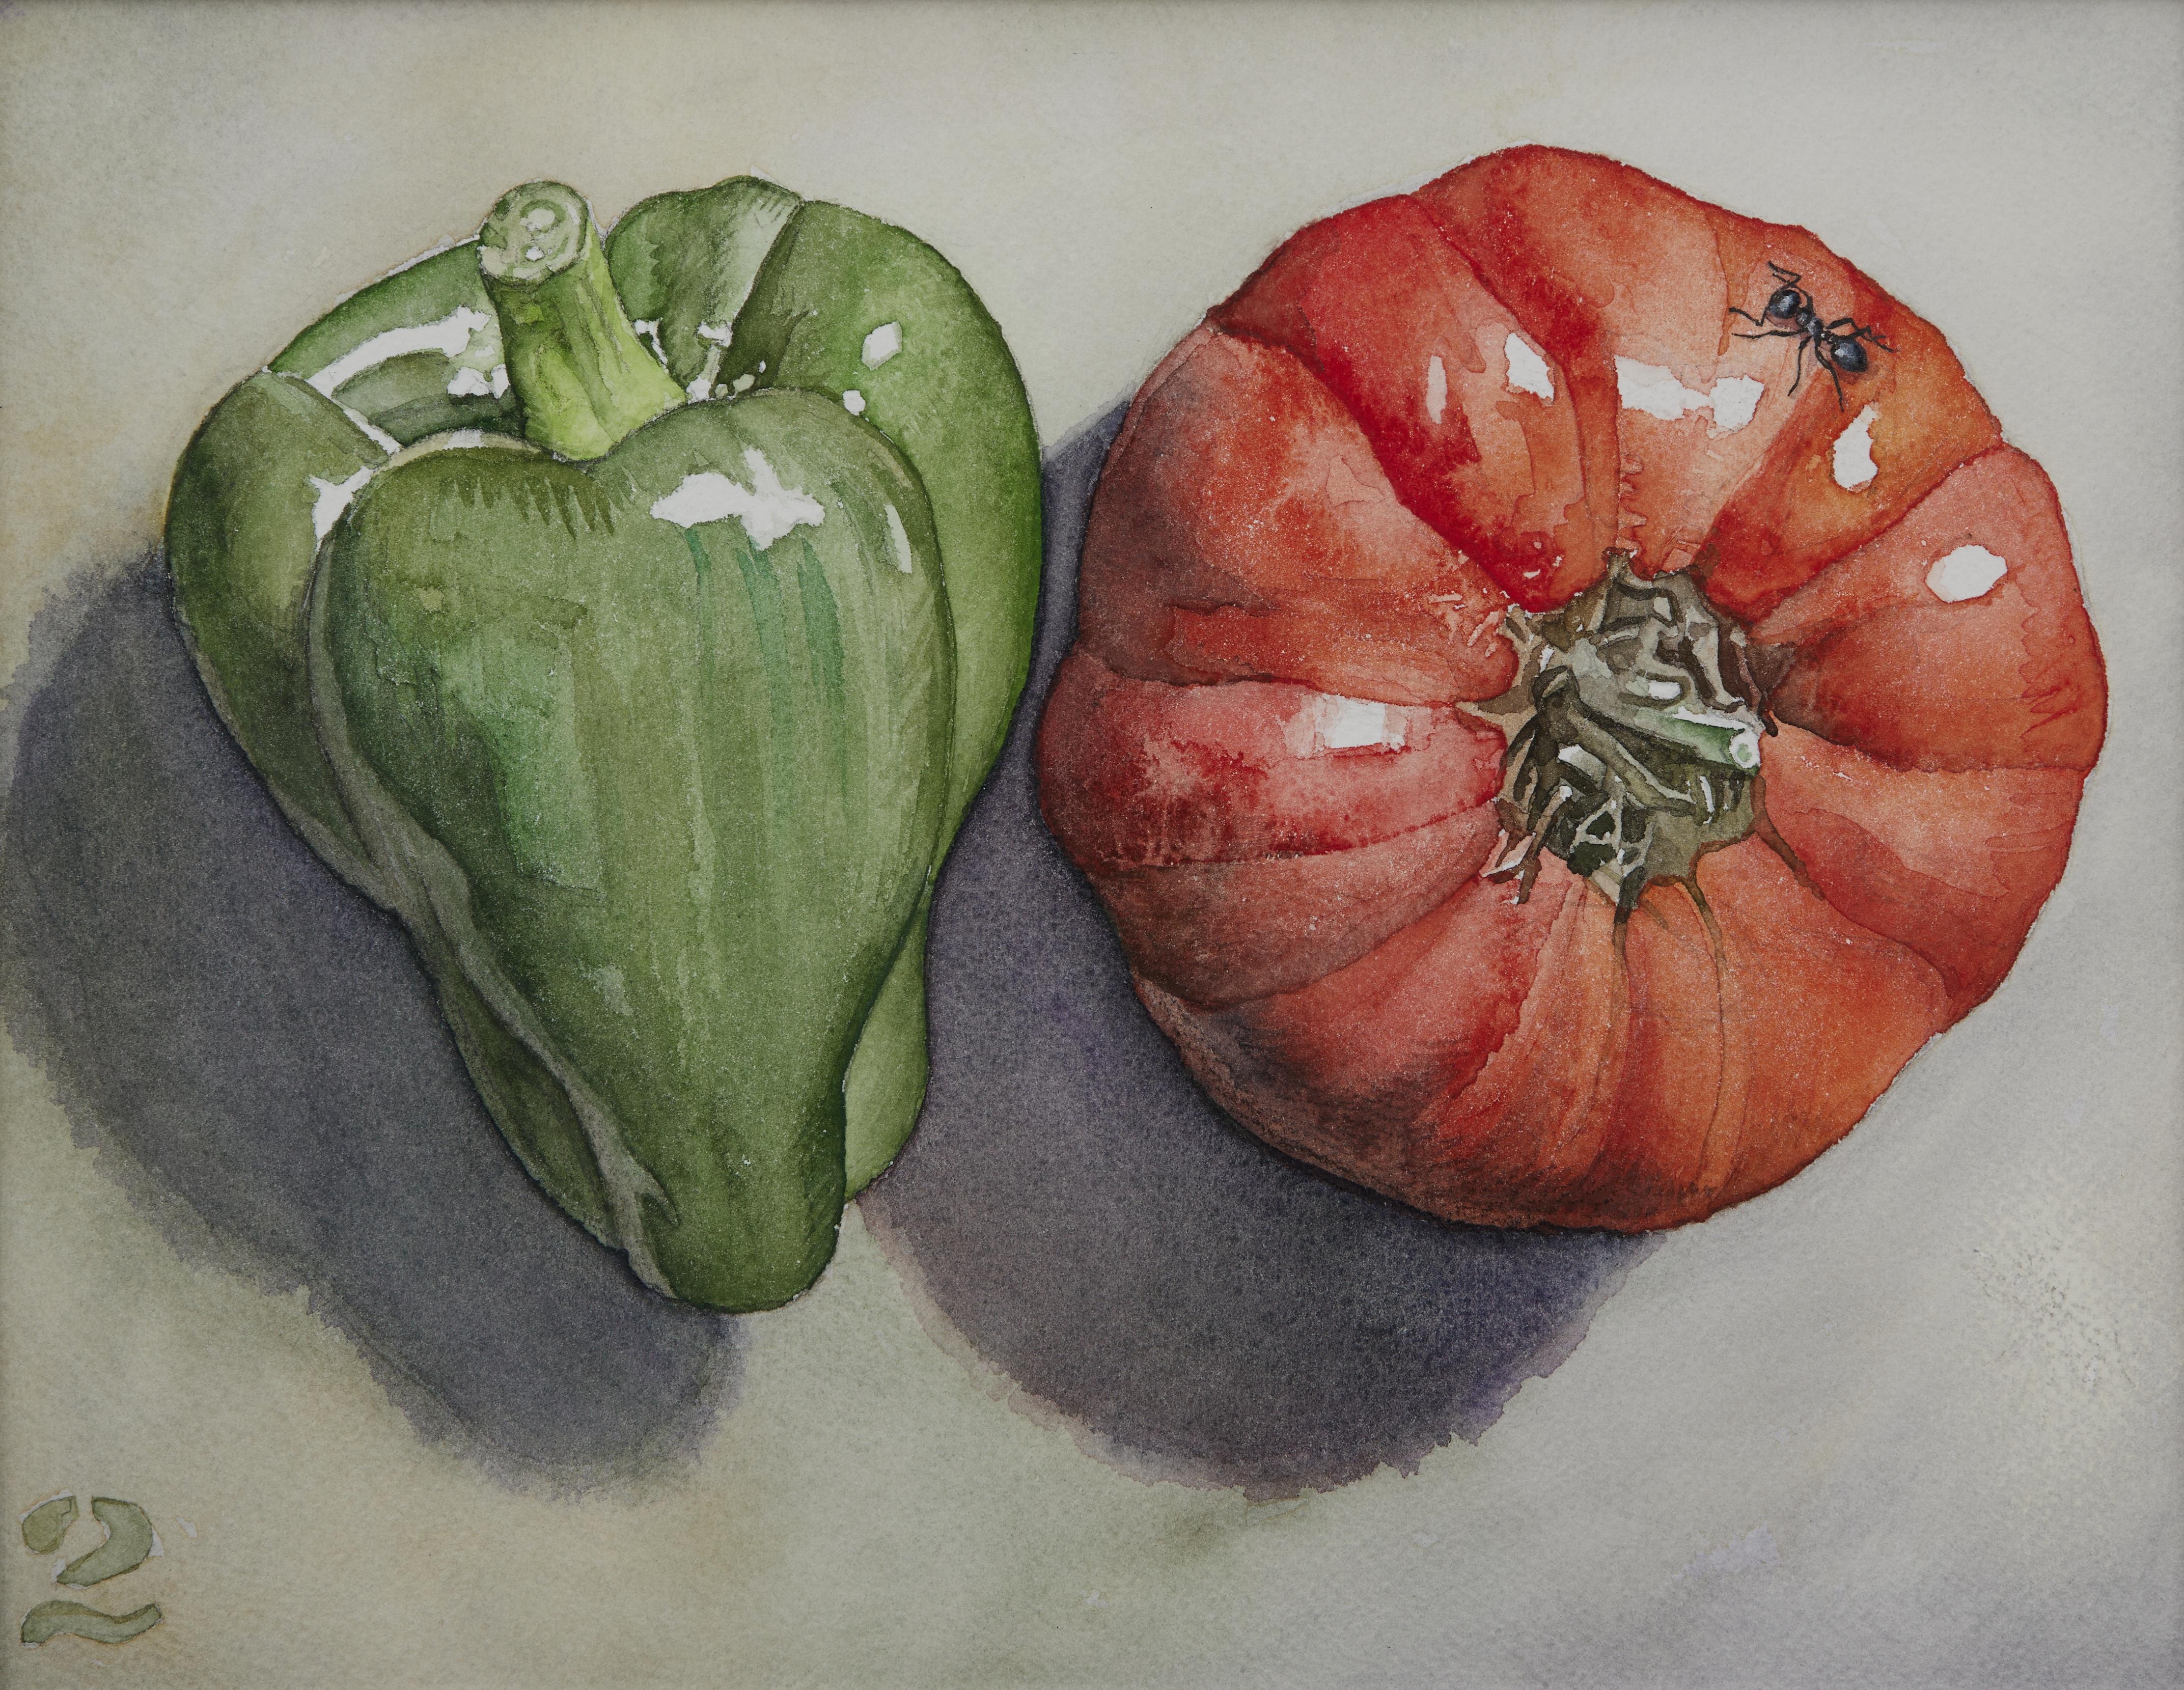 Gemüsestillleben Nr. 2, Contemporary Aquarell von Ohio trompe l'oeil Künstler (Fotorealismus), Art, von George Mauersberger